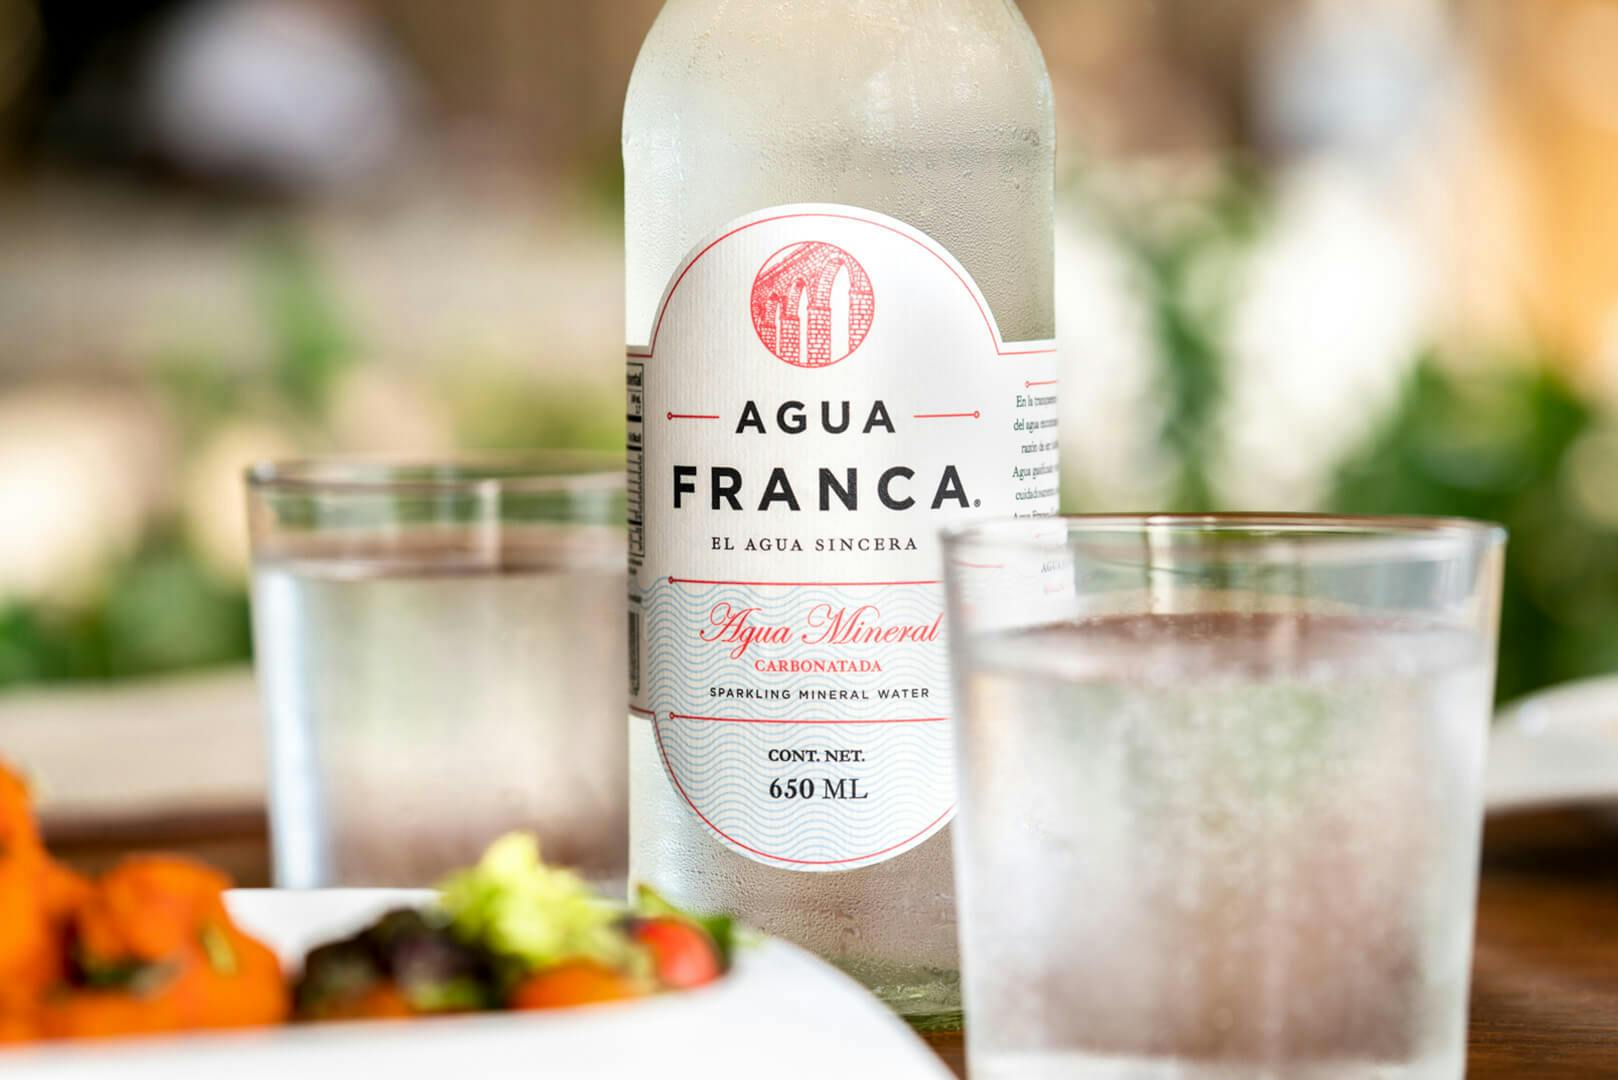 Image of “Algo nuevo” para la etiqueta de Agua Franca